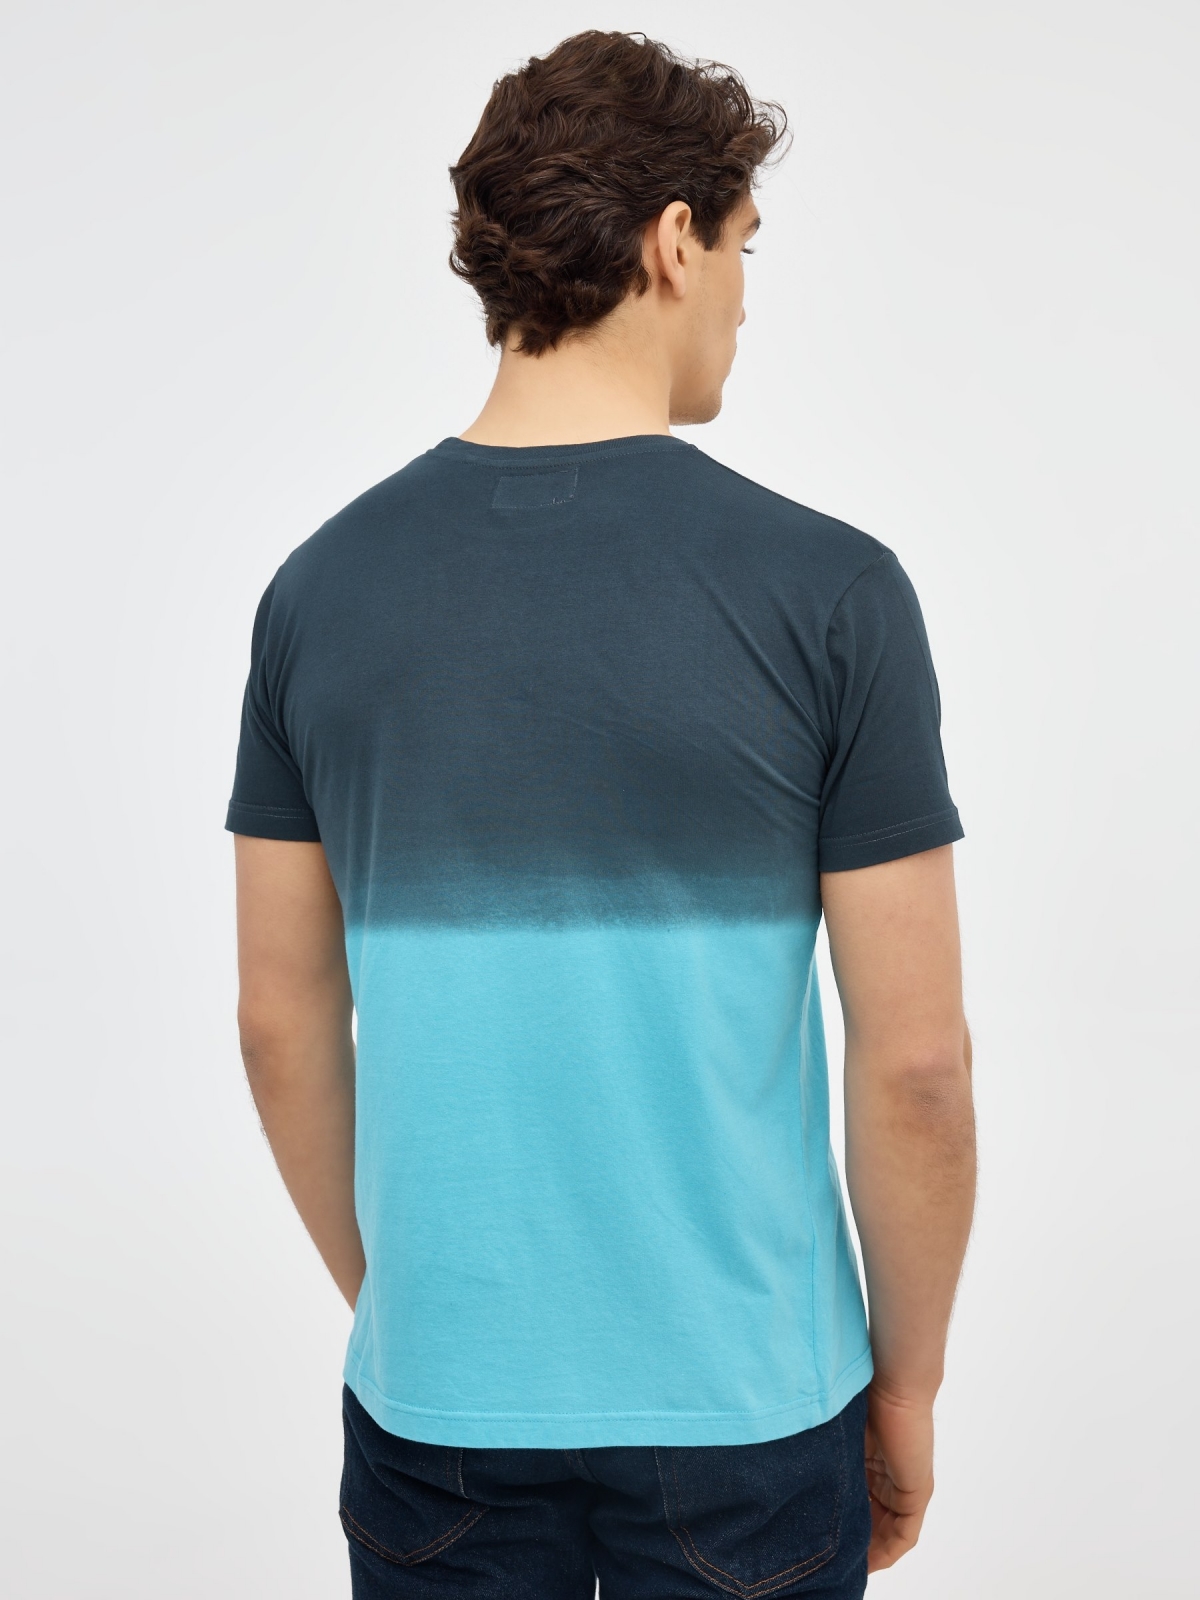 Camiseta estampado degradado azul celeste vista media trasera